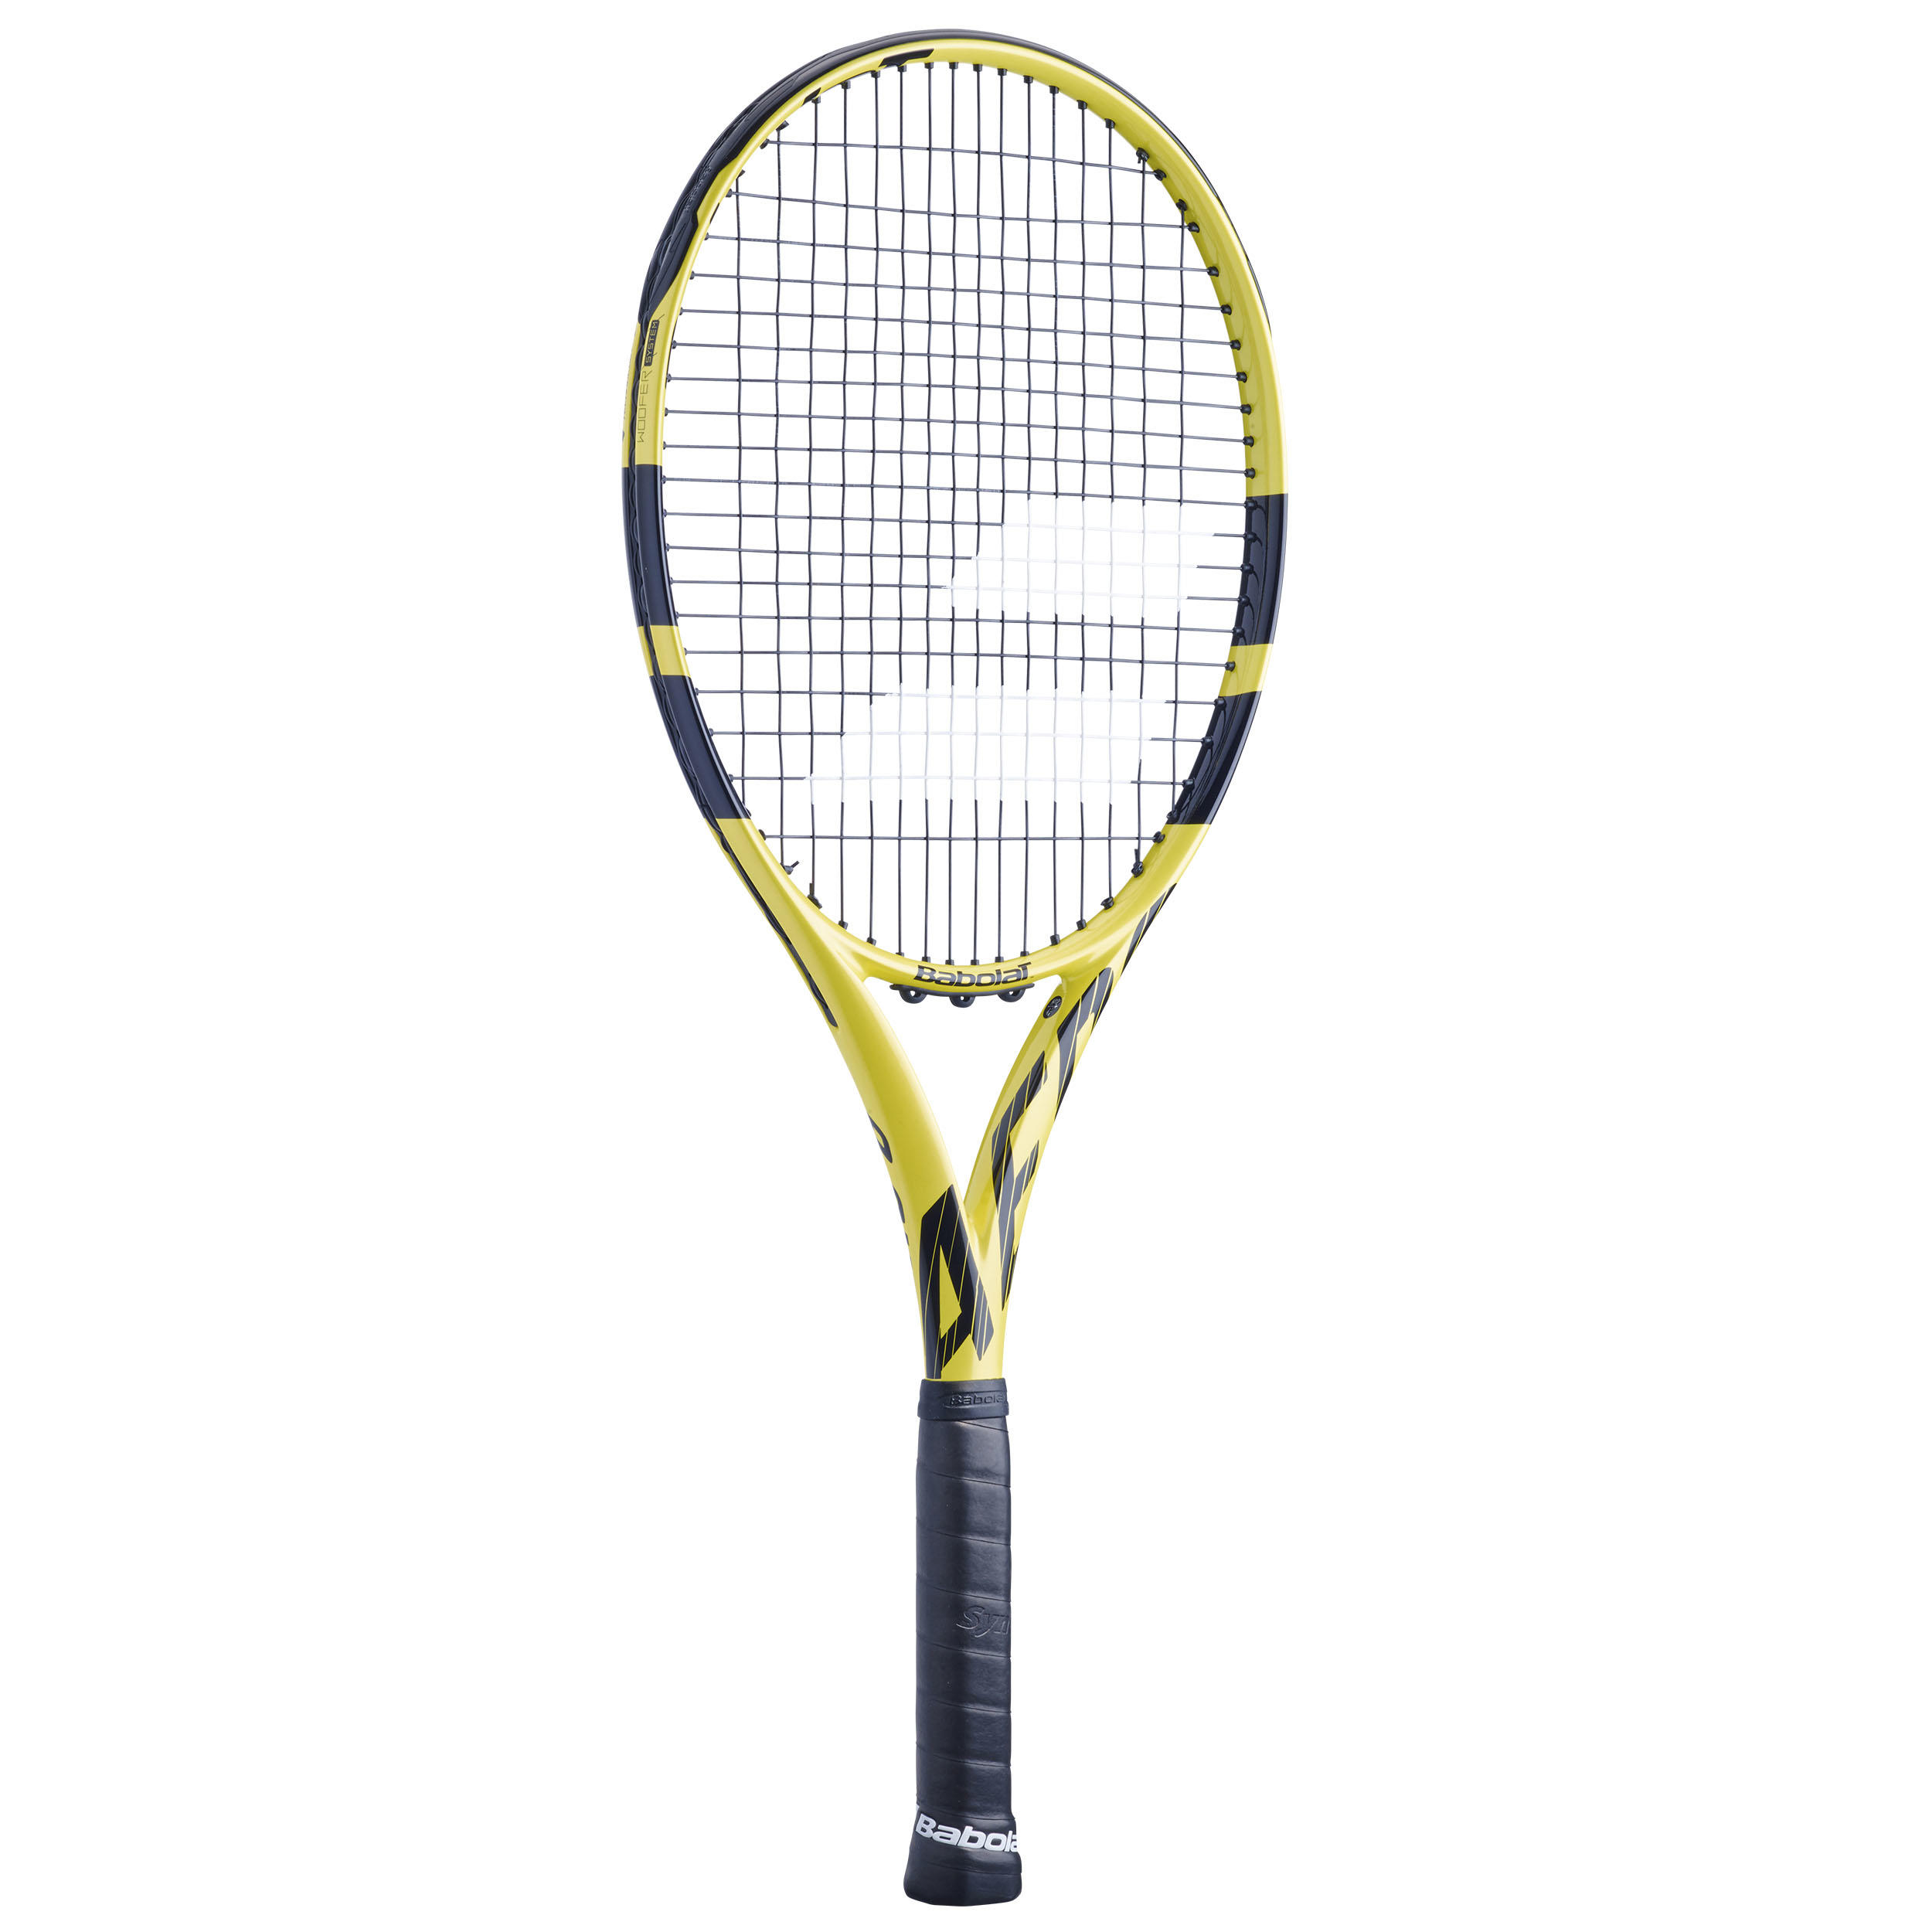 Aero G Adult Tennis Racket - Black 